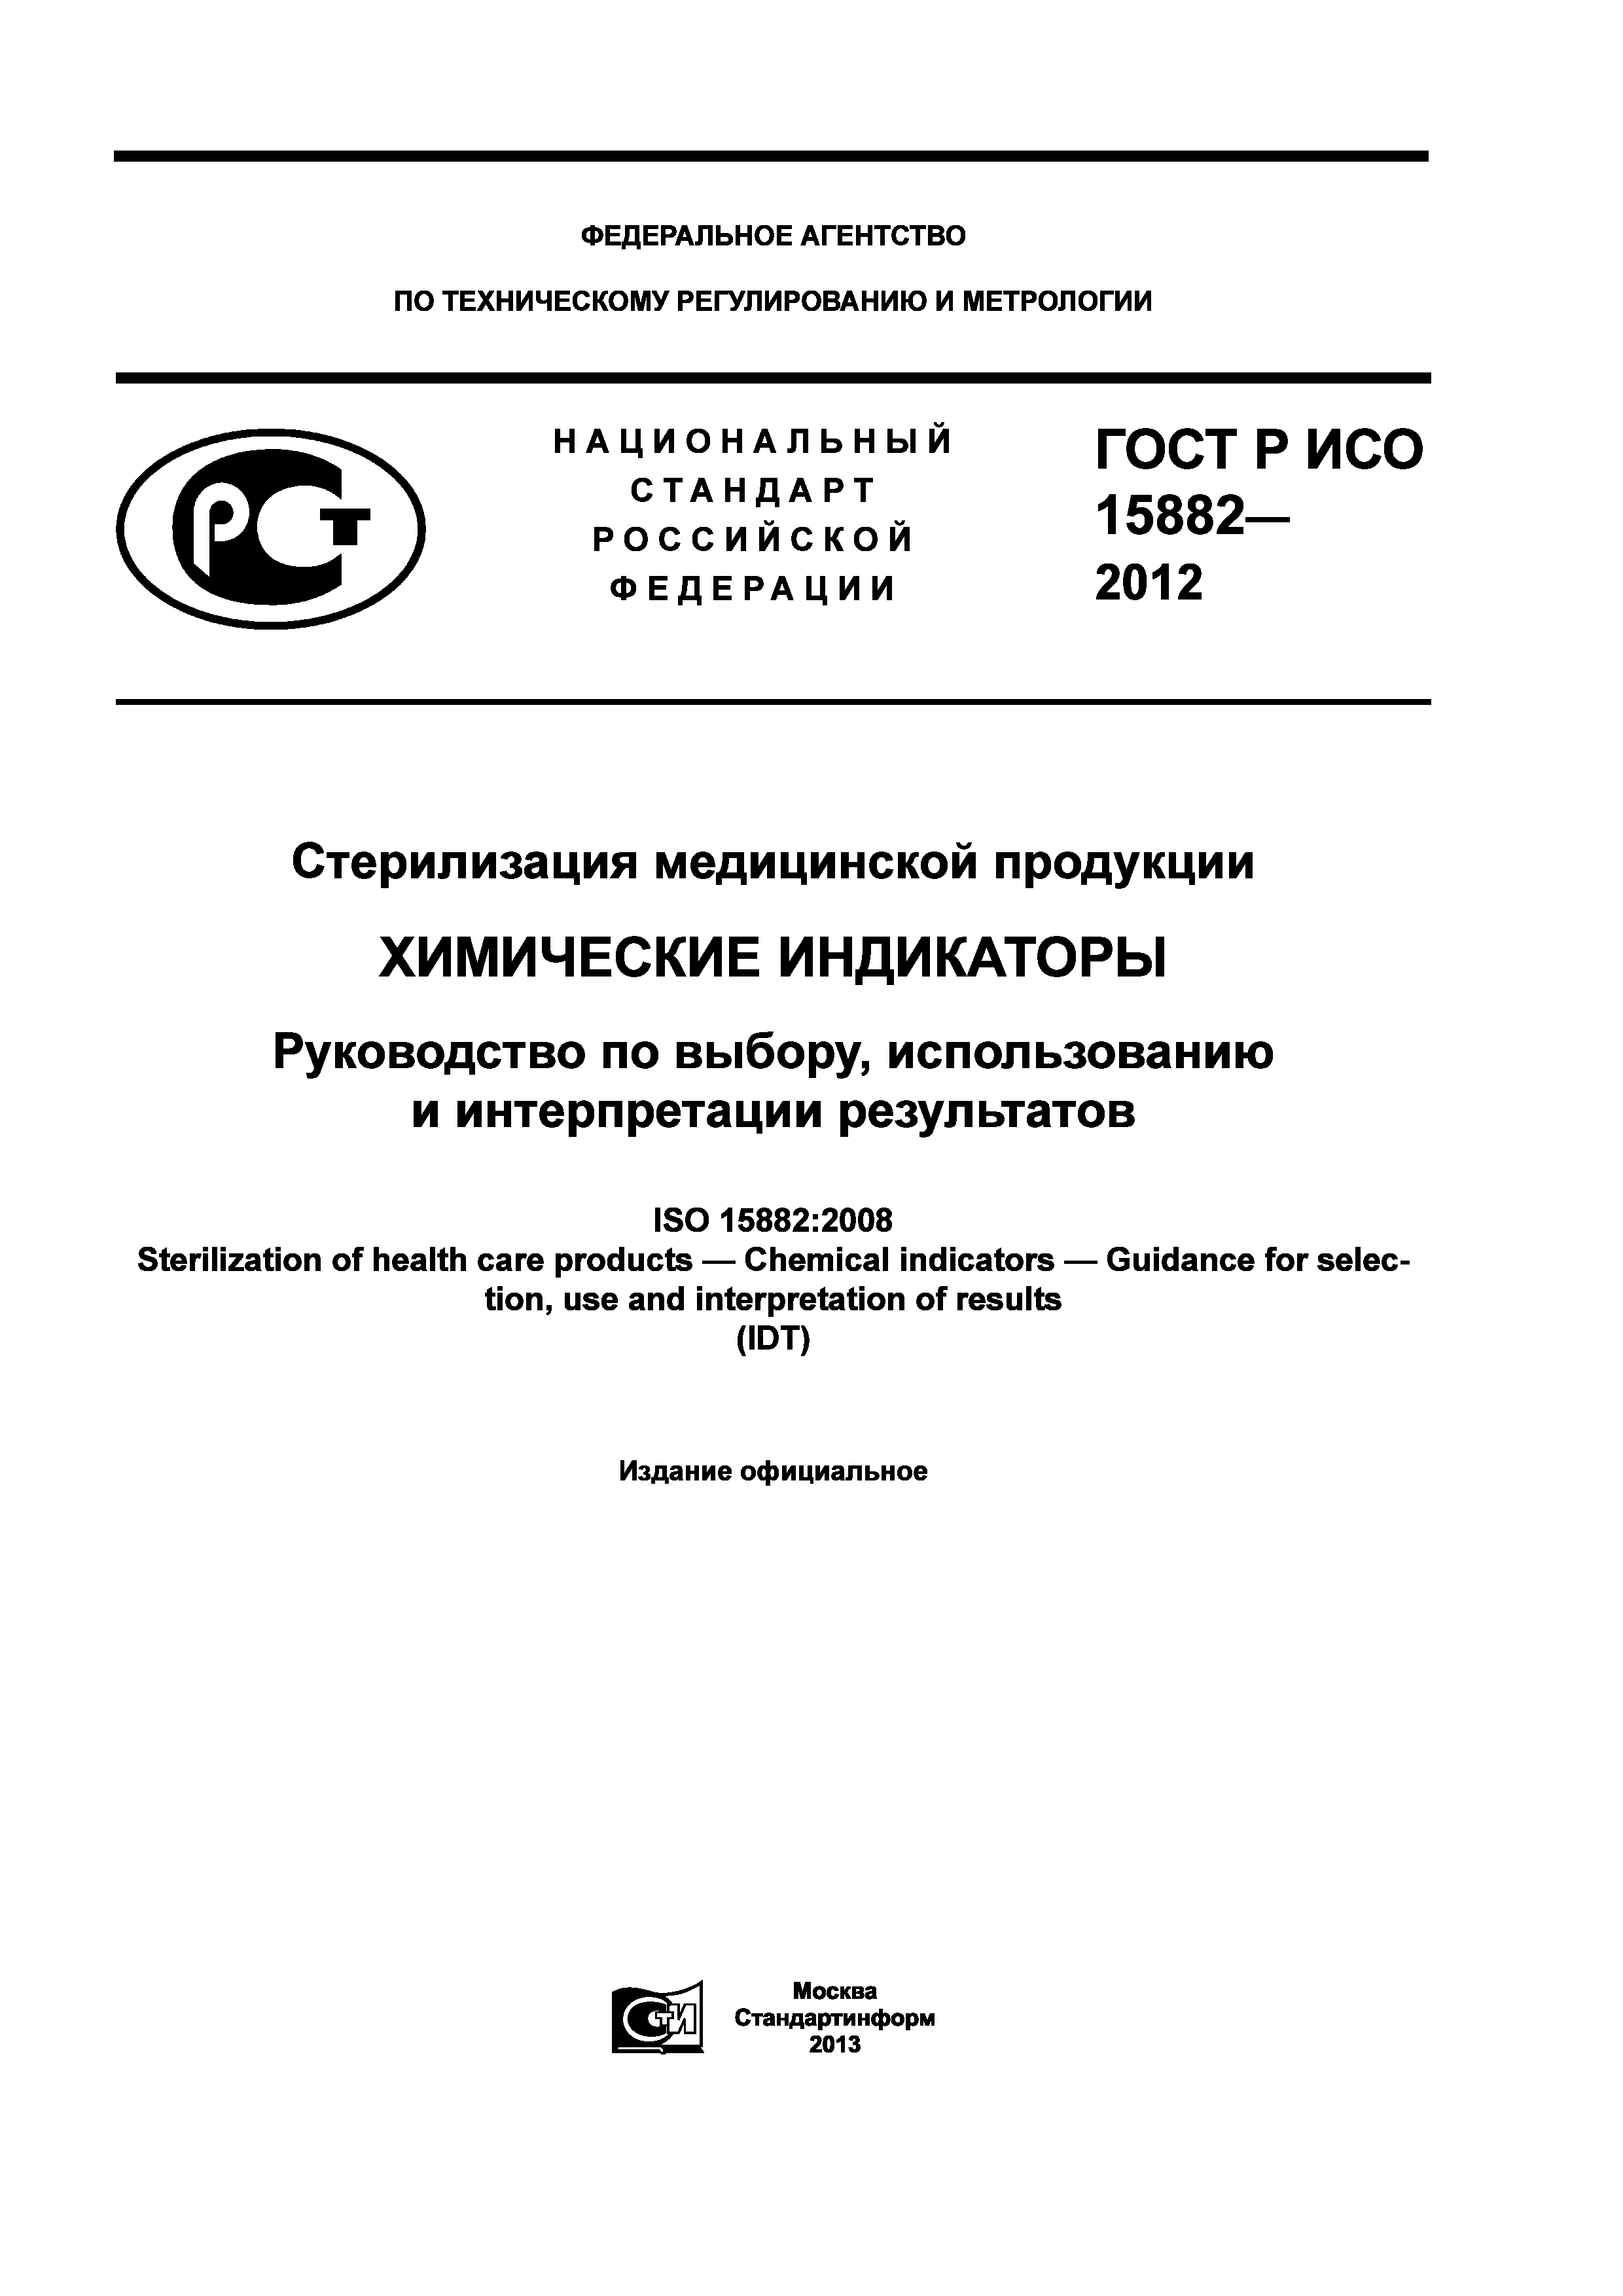 ГОСТ Р ИСО 15882-2012